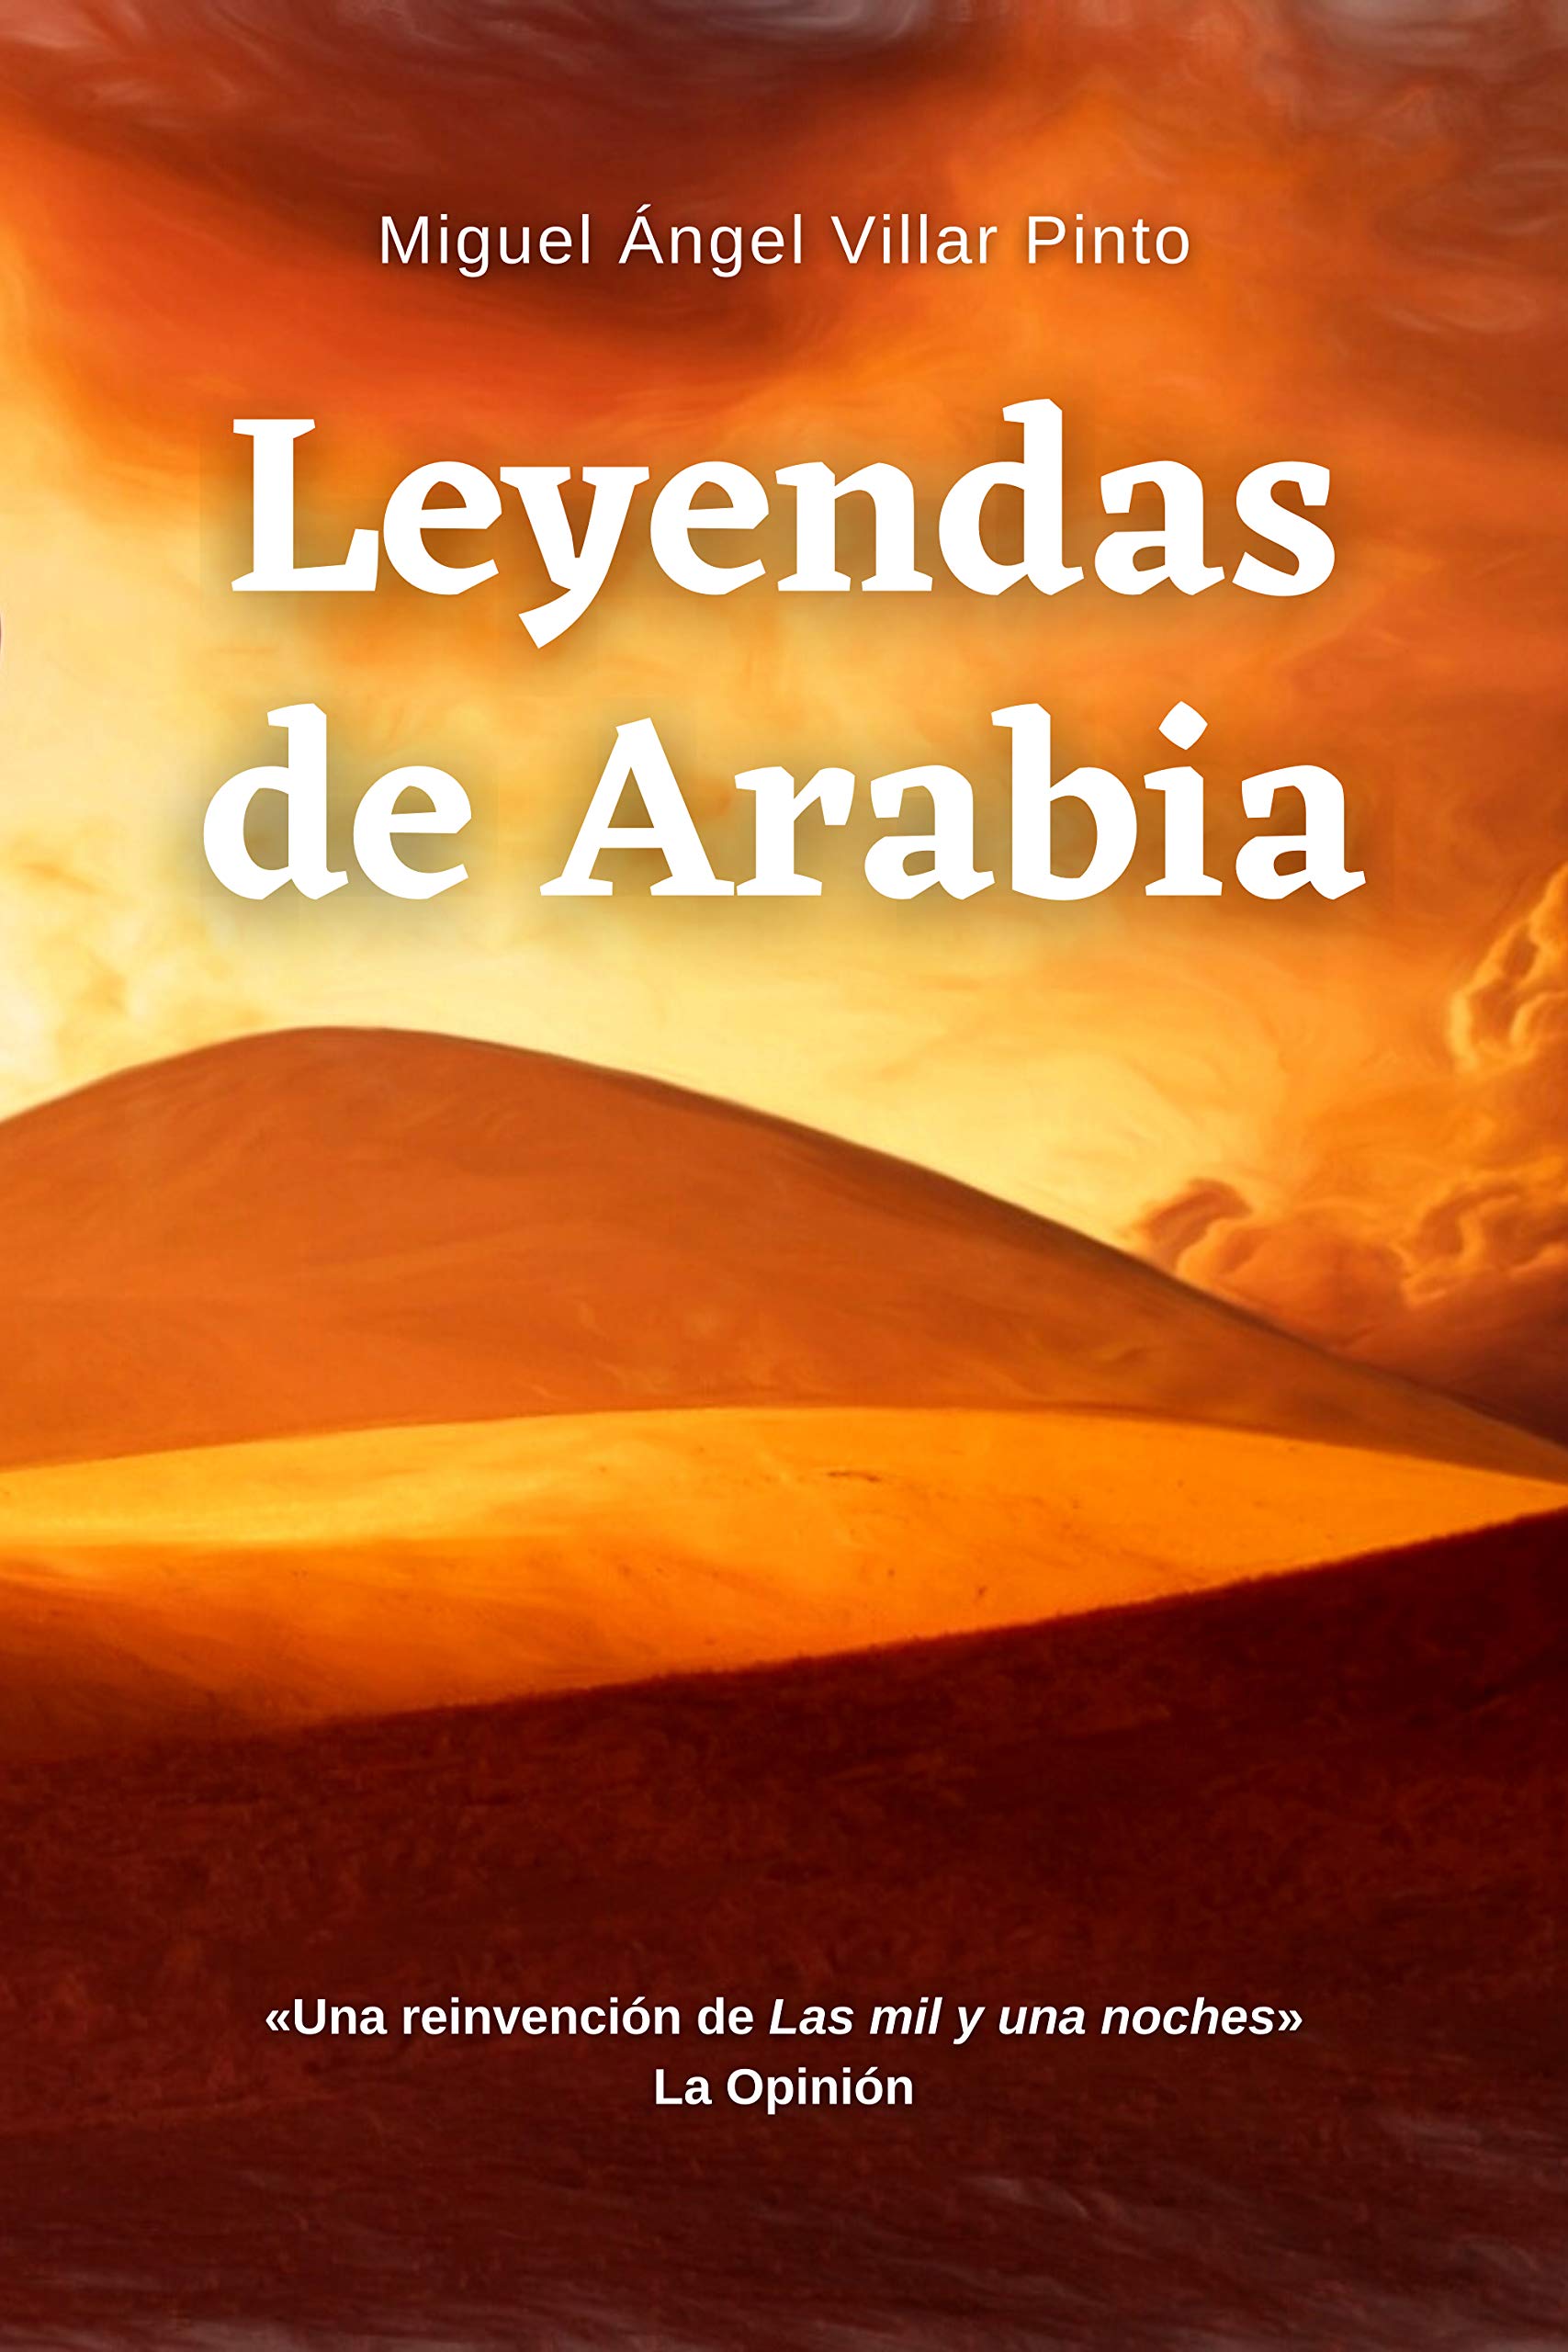 Leyendas de Arabia (Cuentos maravillosos nº 5) (Spanish Edition)